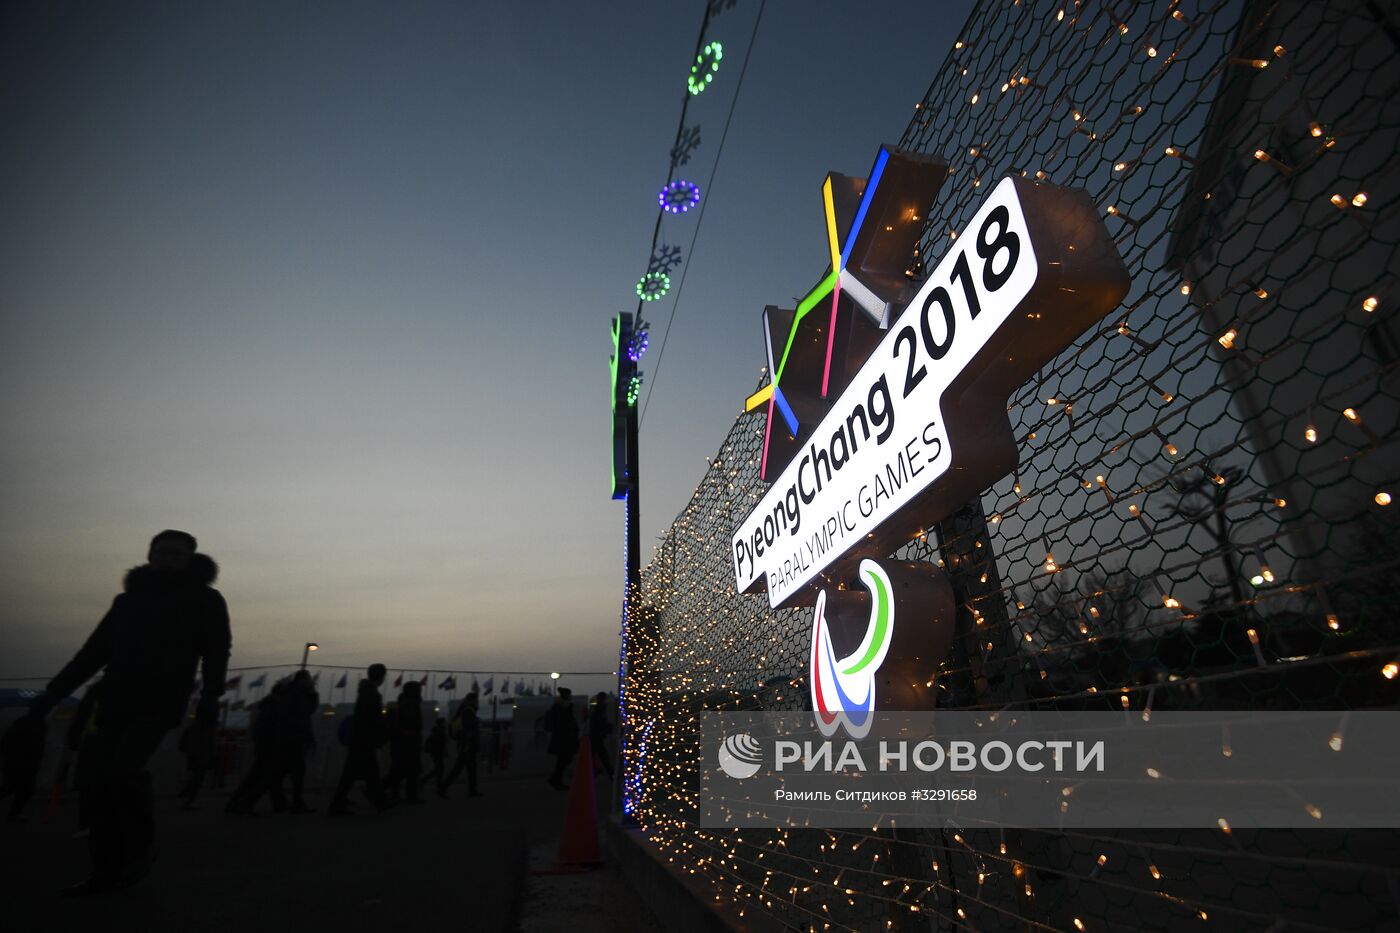 Паралимпийские игры в Пхенчхане